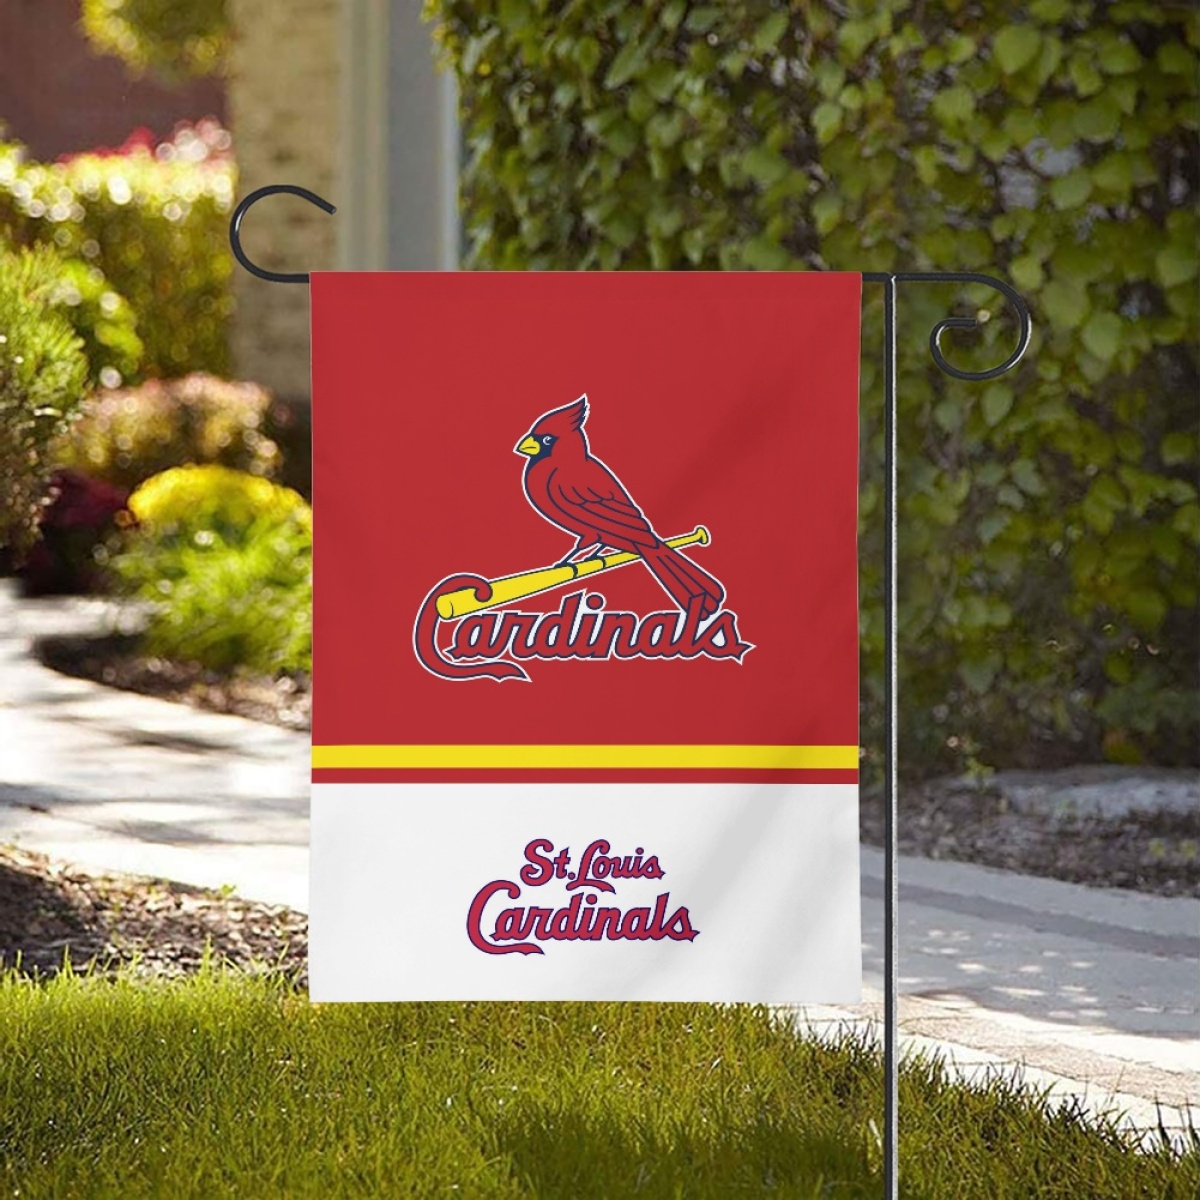 St. Louis Cardinals Double-Sided Garden Flag 001 (Pls check description for details)